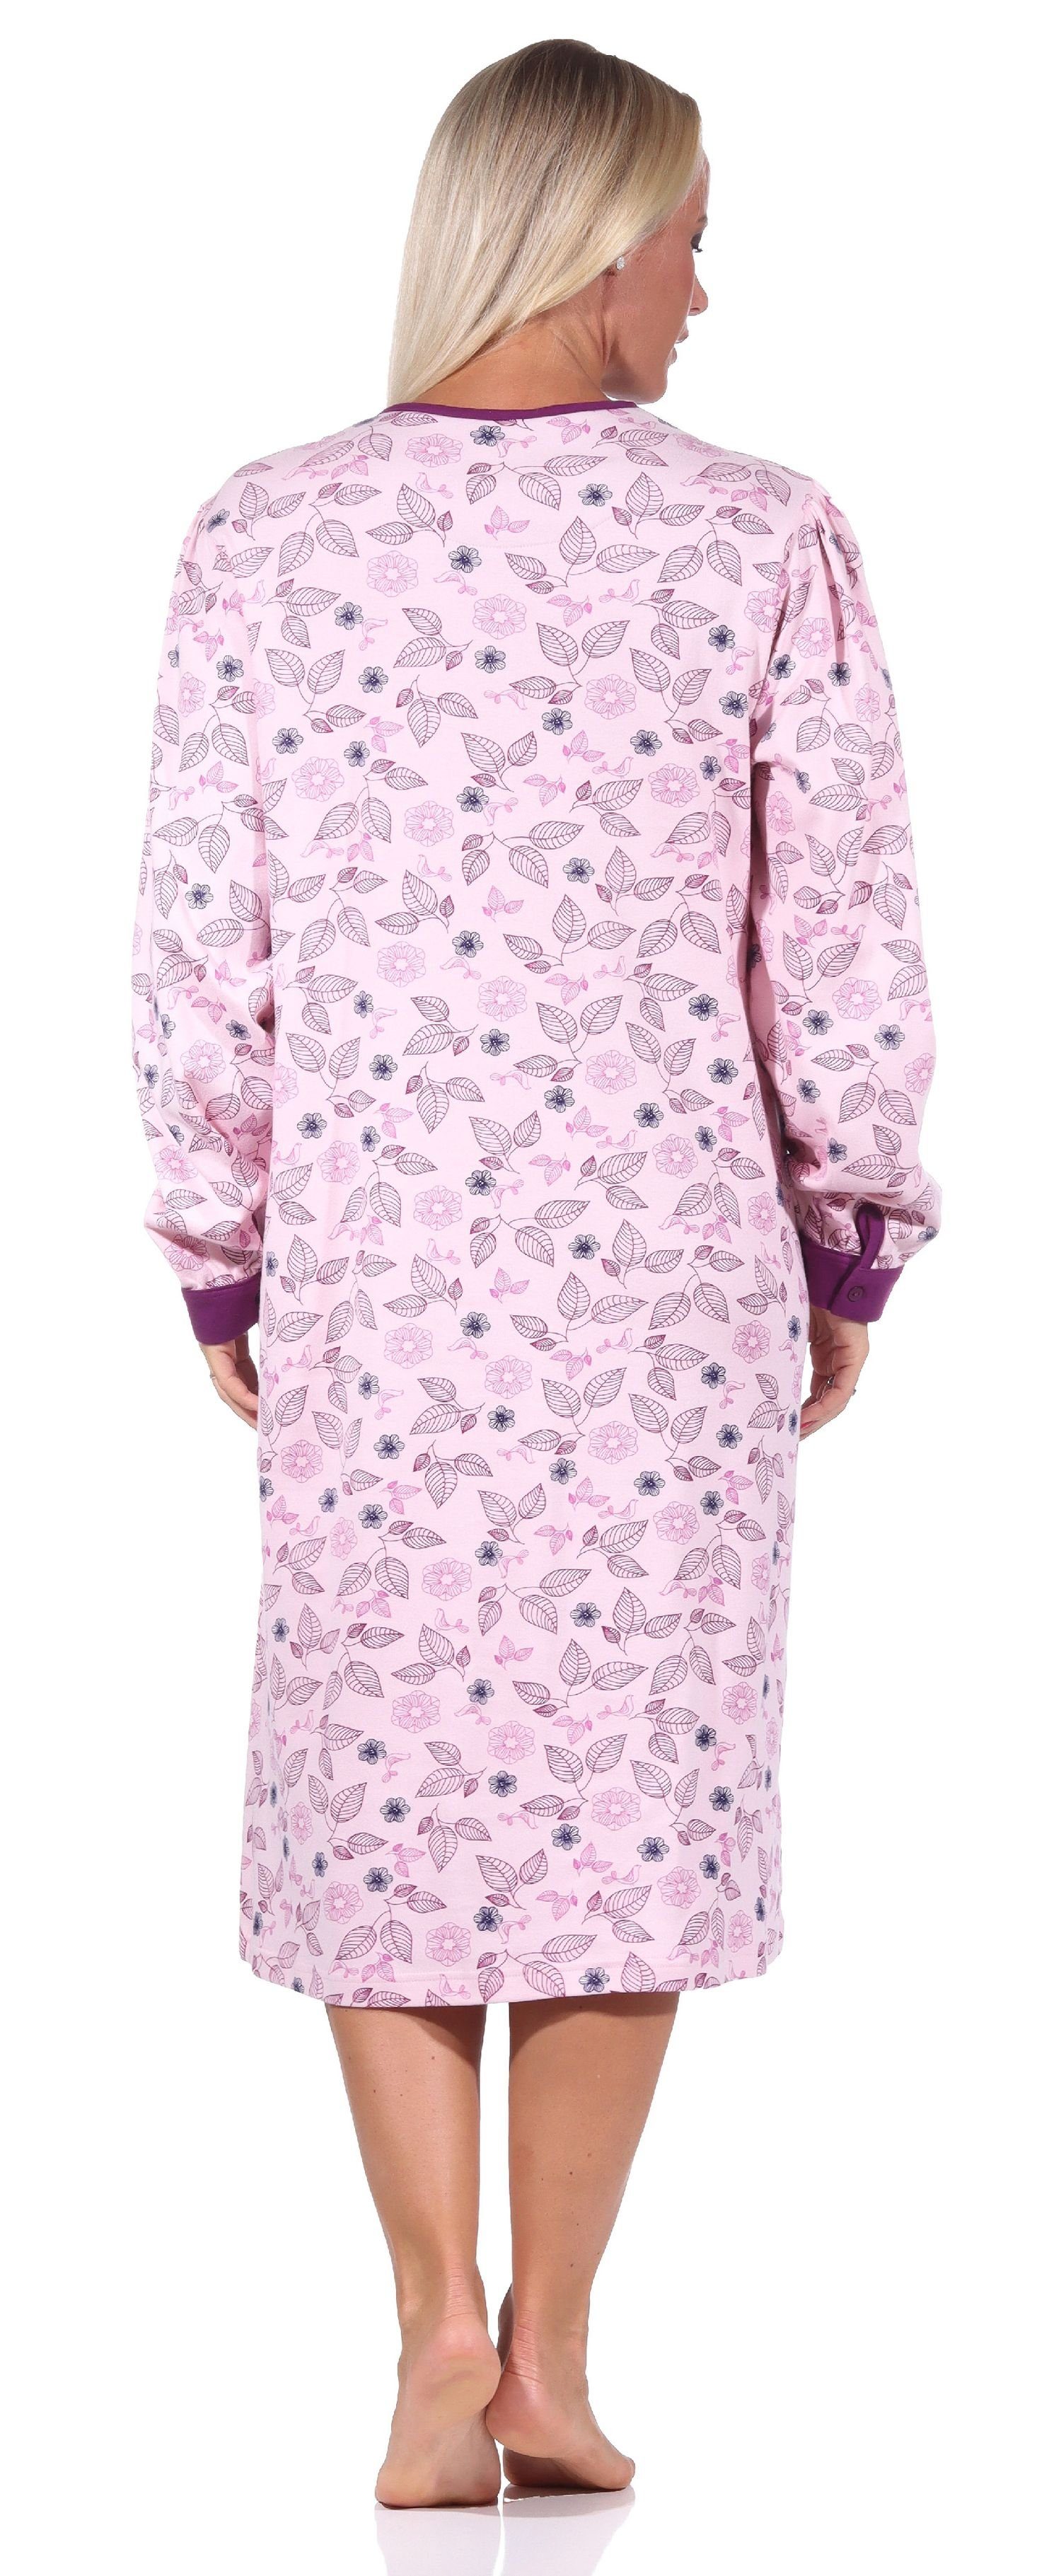 Kuschelinterlock-Qualität in Edles Übergröße Normann in Nachthemd Damen Nachthemd -auch rosa